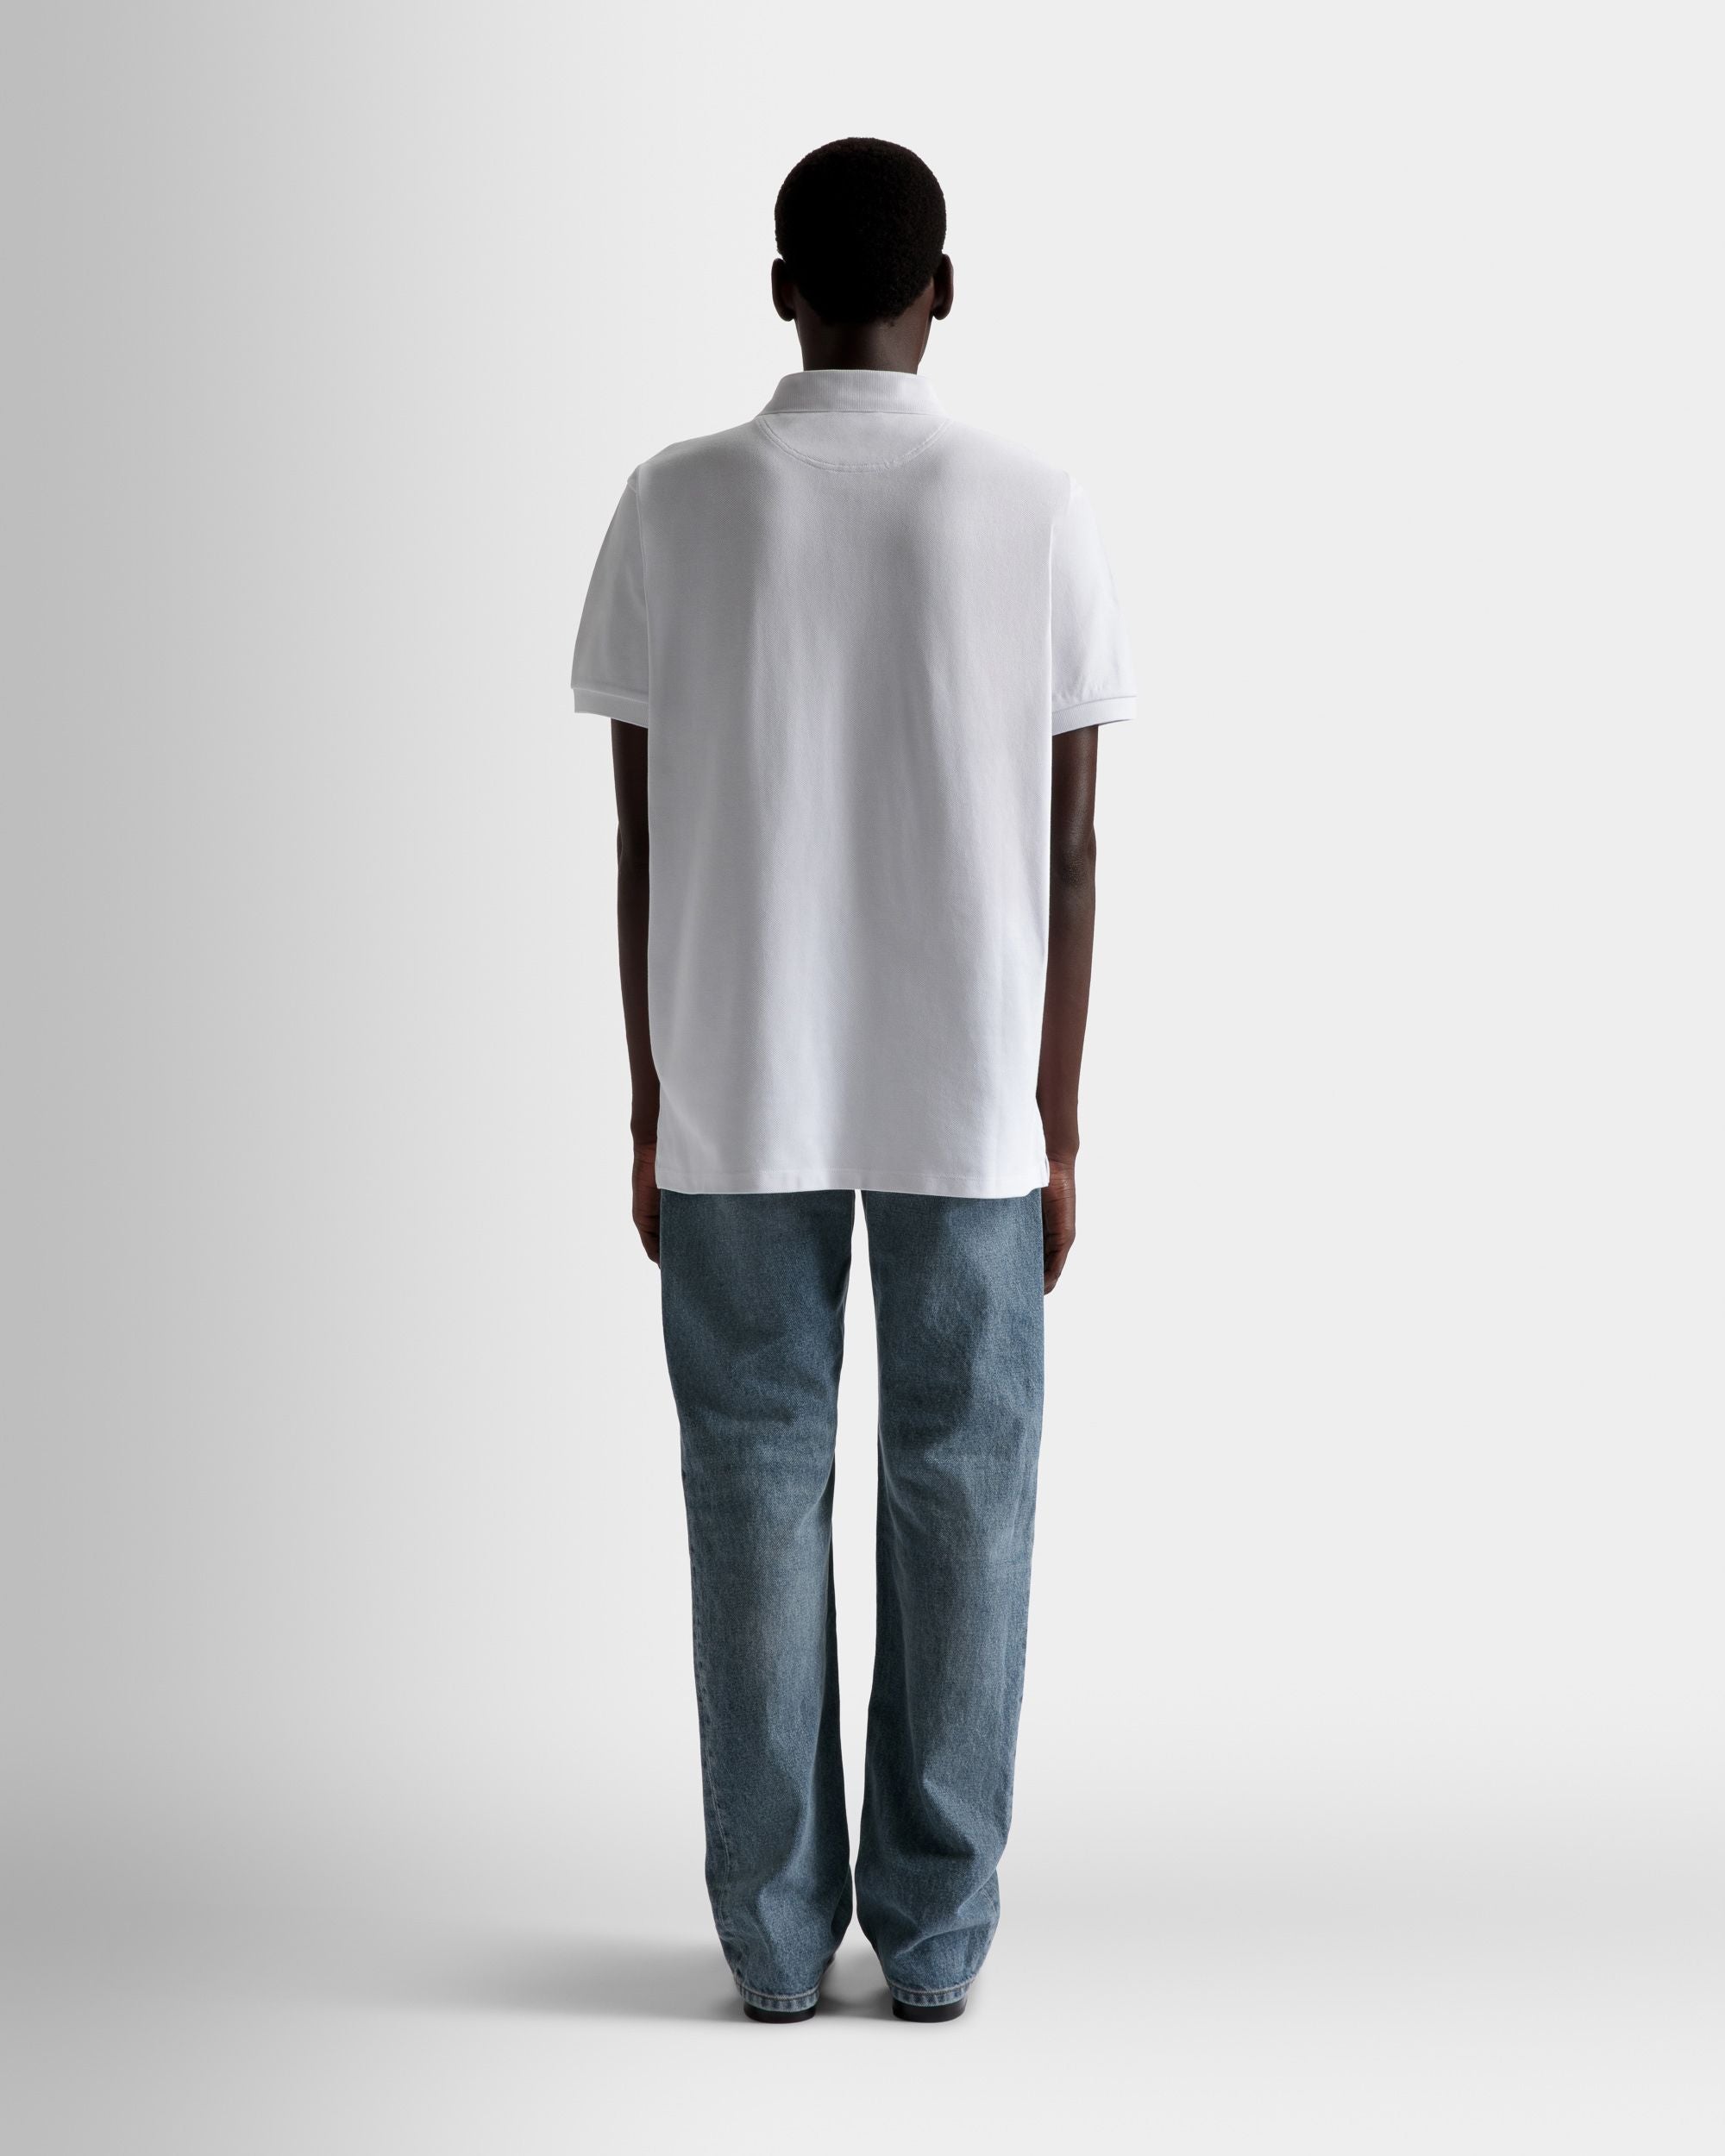 Kurzarm-Poloshirt | Poloshirt für Herren | Weiße Baumwolle | Bally | Model getragen Rückseite